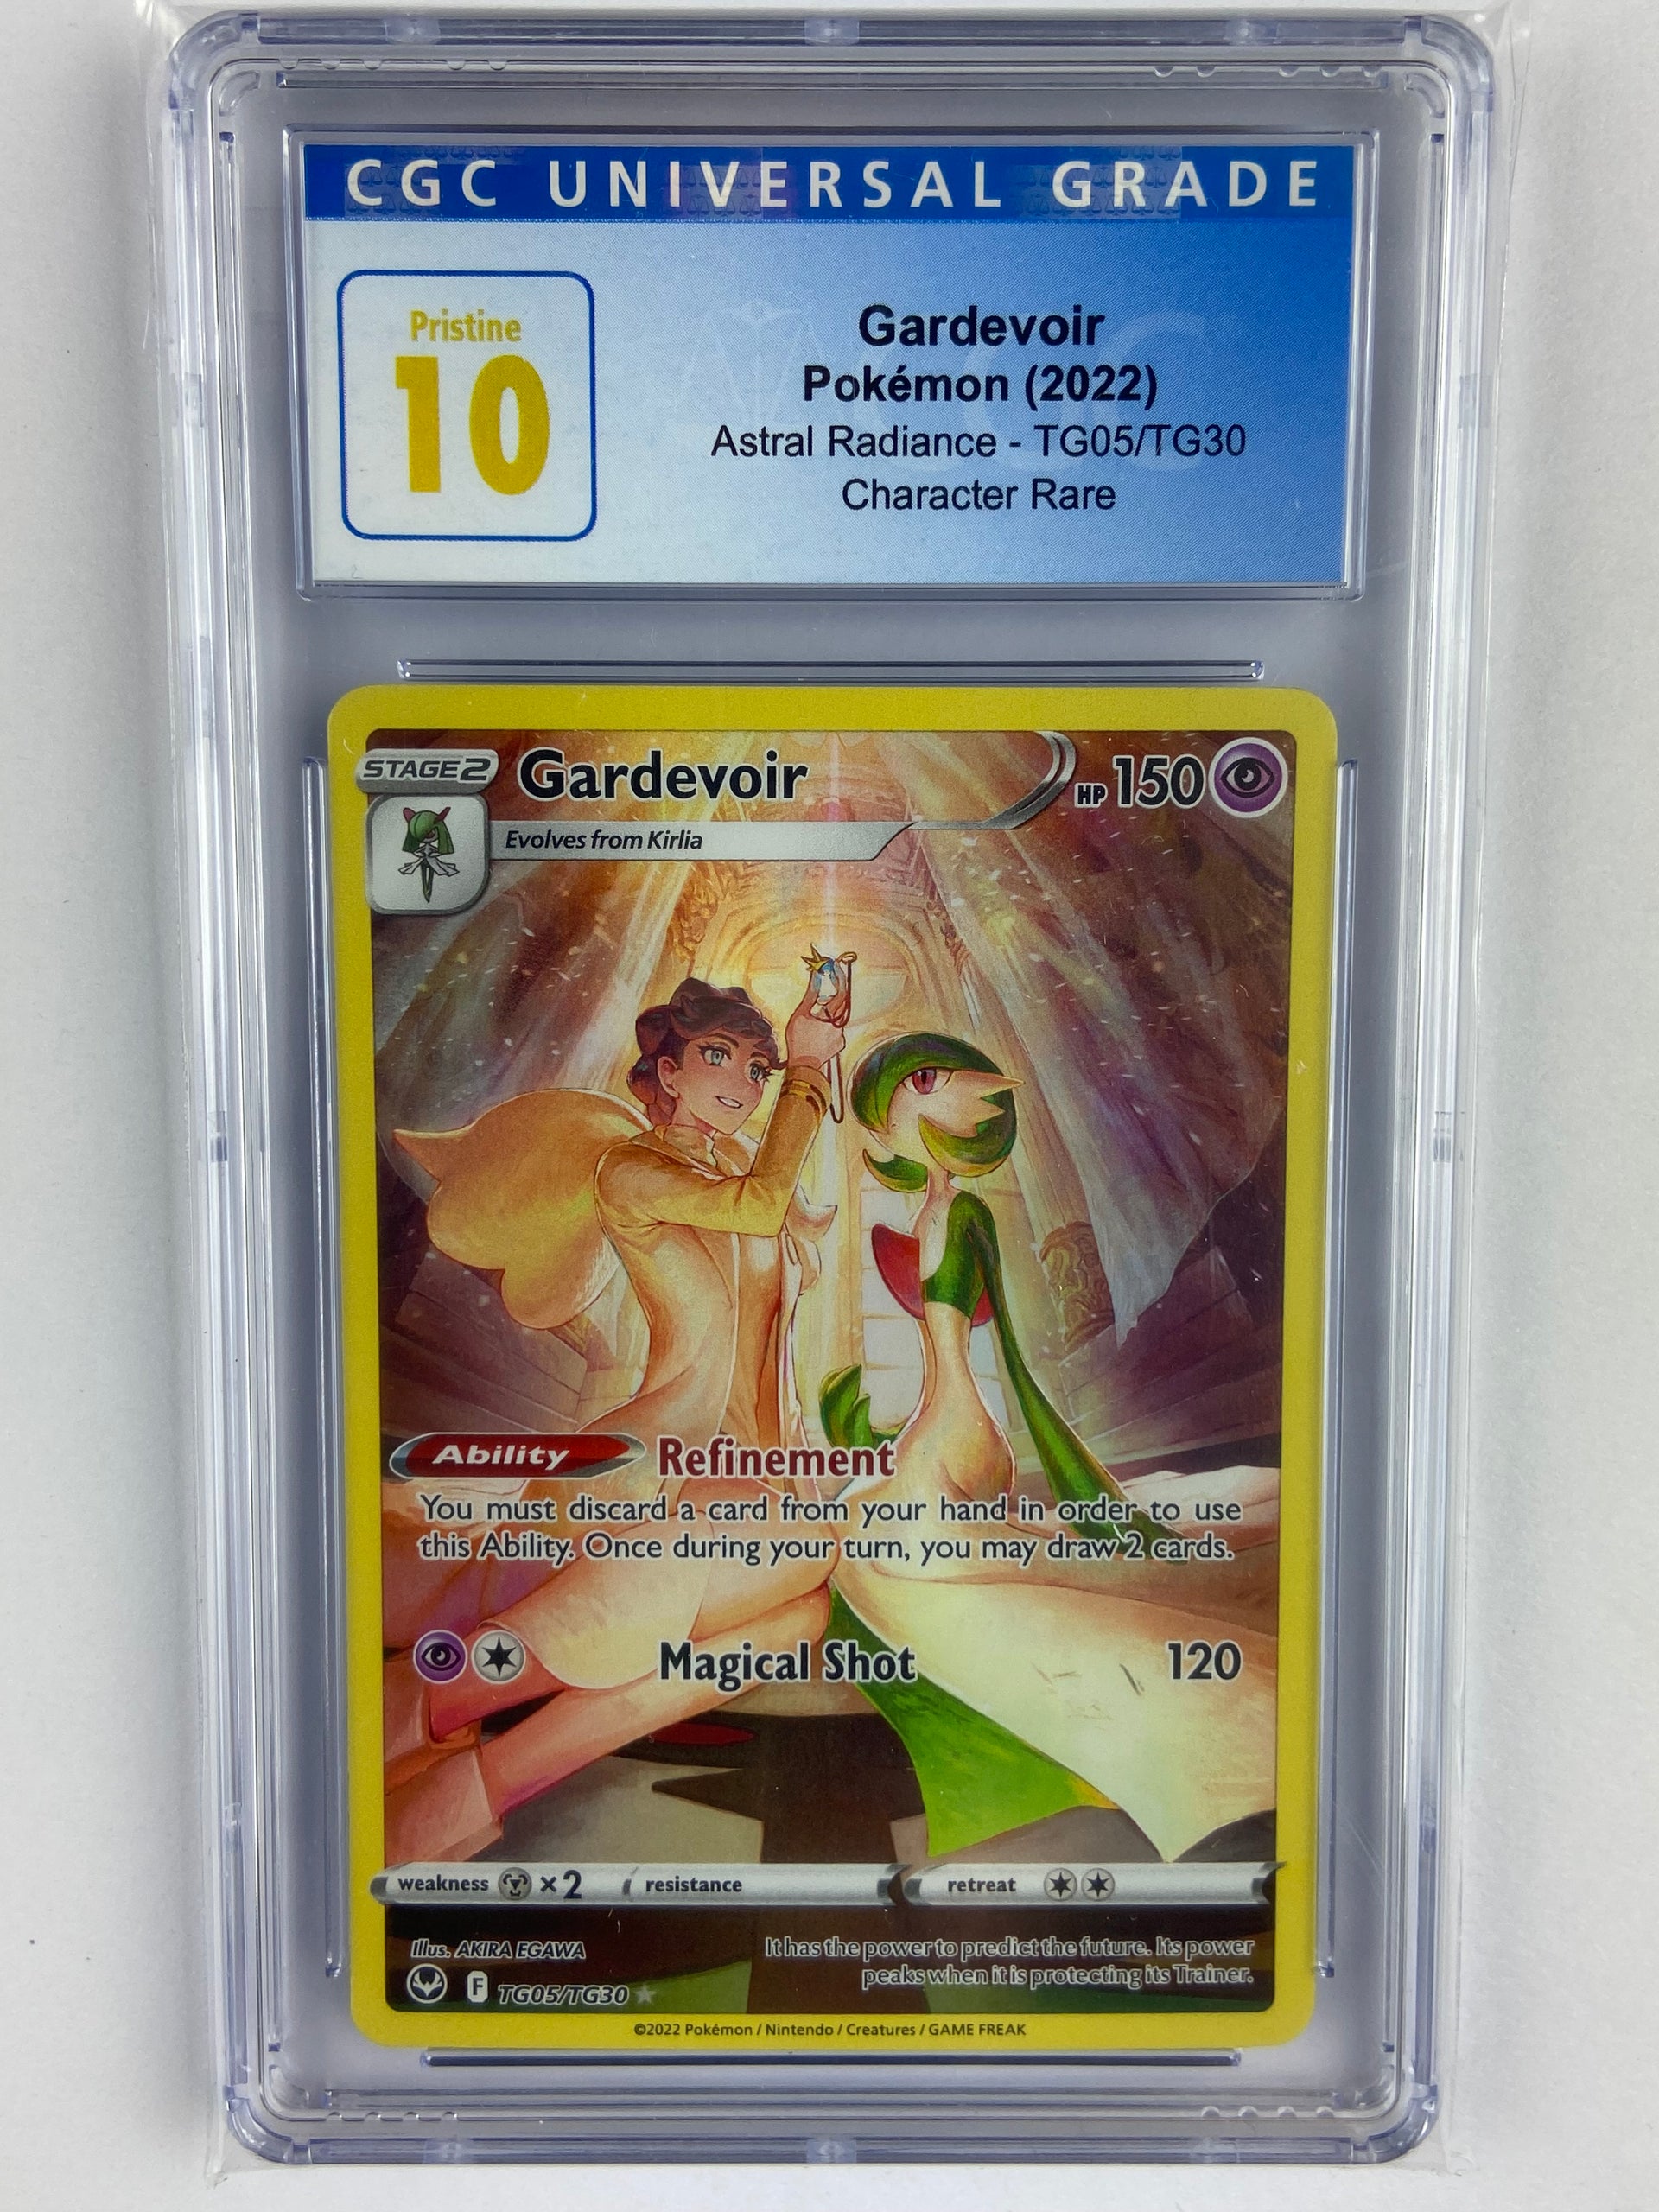 Pokemon Trading Card Game XY 128/171 Gardevoir Soul Link (Rank A)